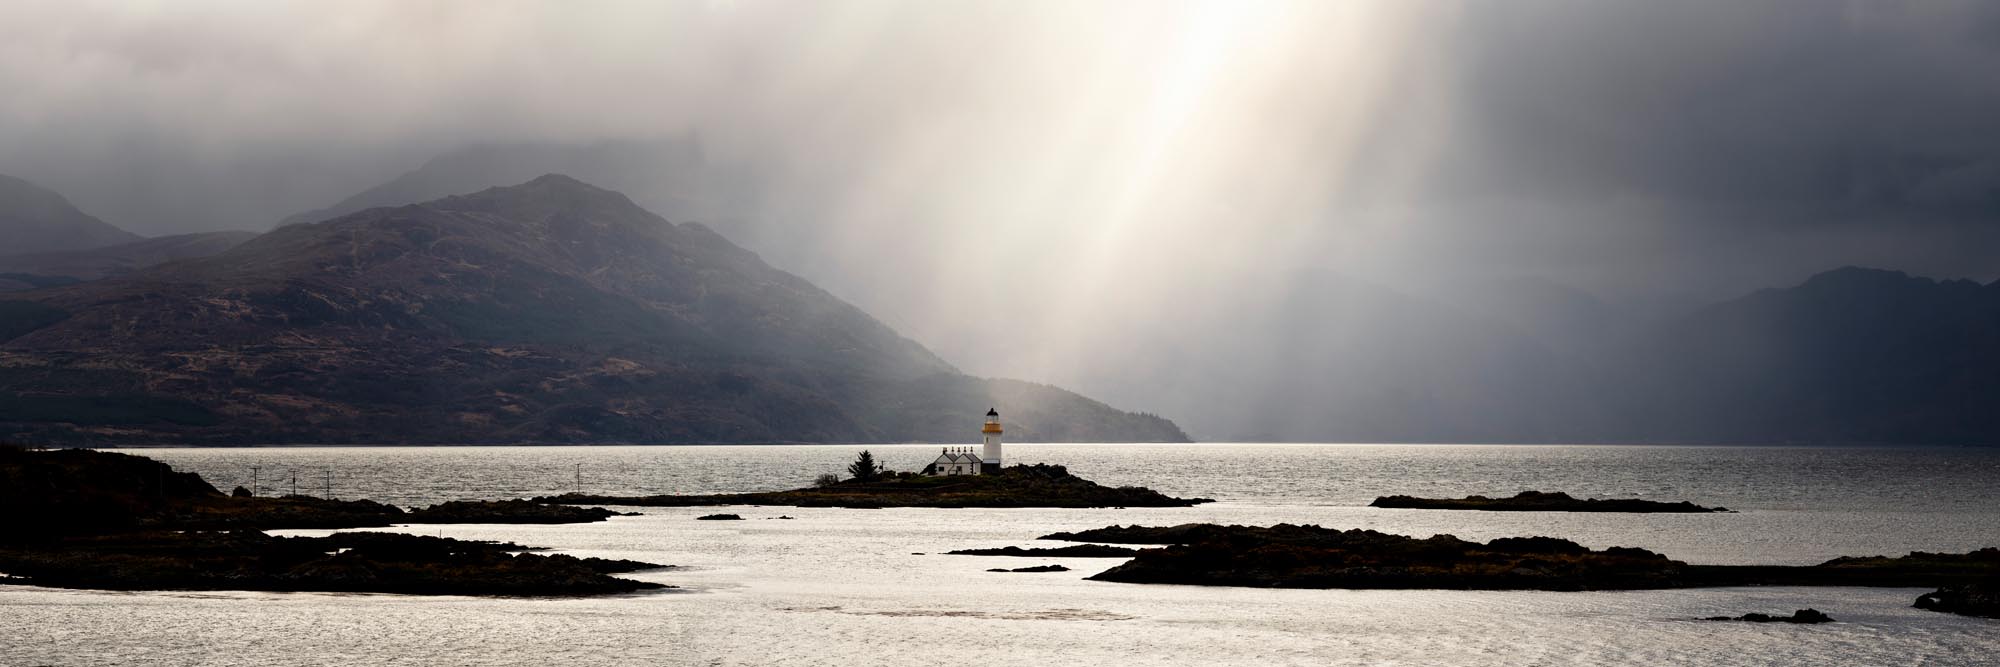 Scottish lighthouse on the isle of Skye